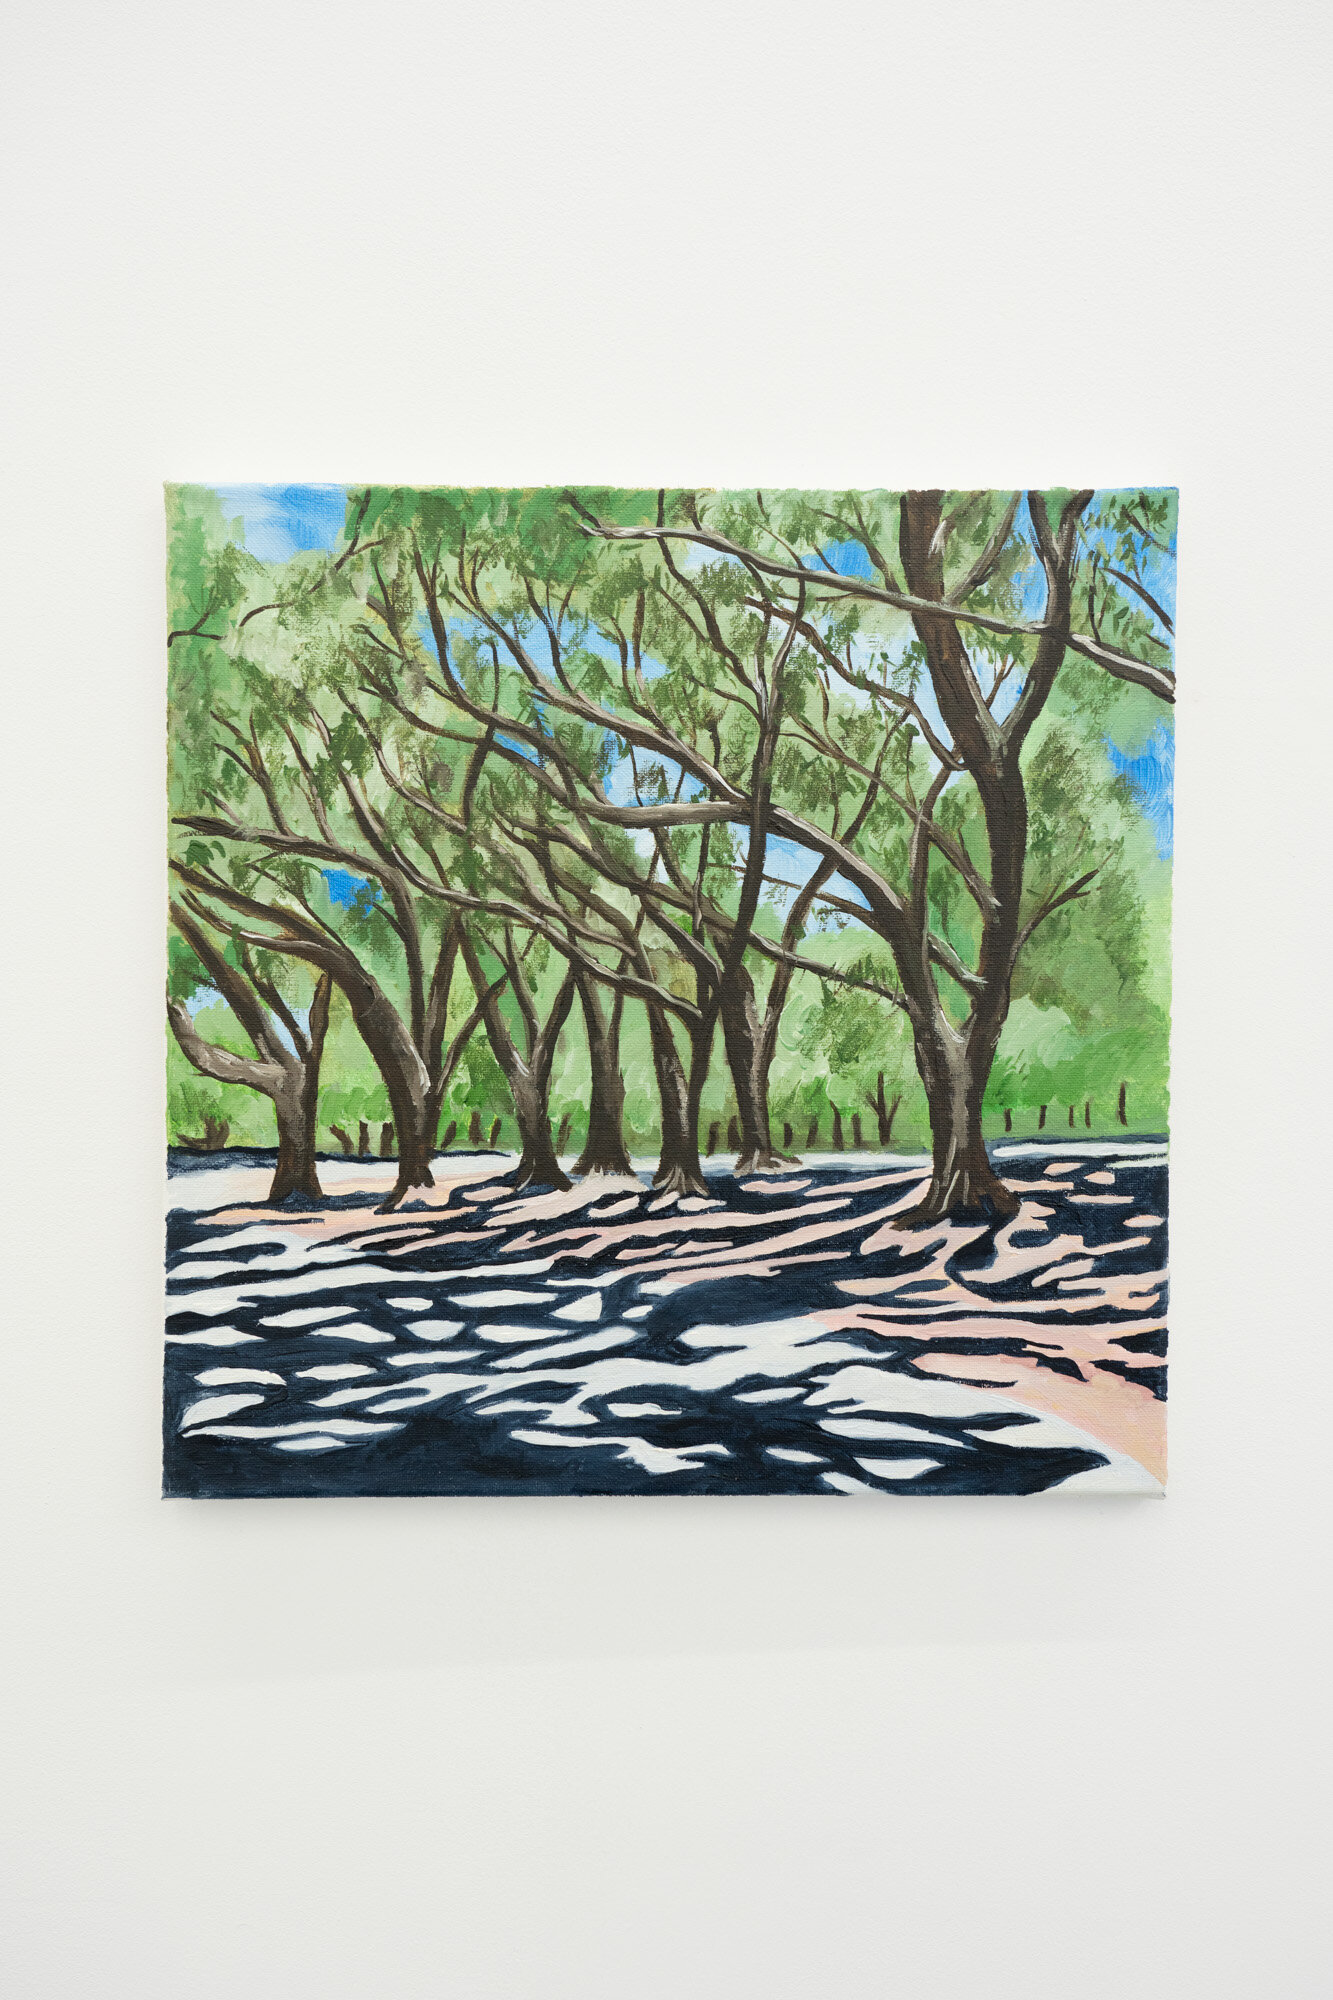  Shana Sharp  The Grove , 2019 Oil on canvas 14 x 14 inches 